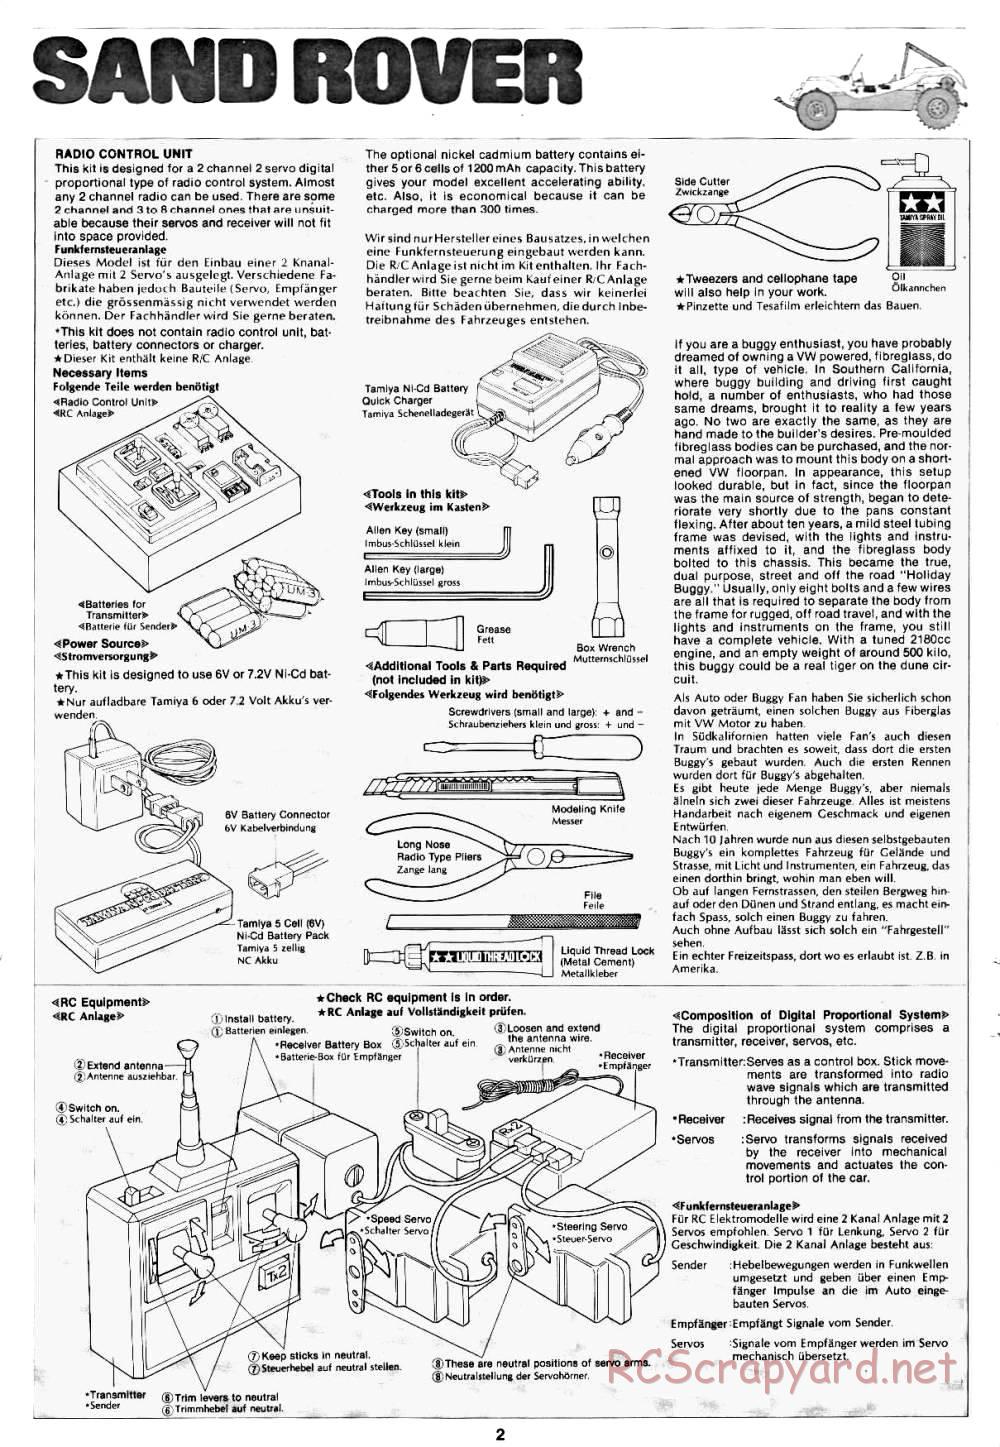 Tamiya - Sand Rover - 58024 - Manual - Page 2